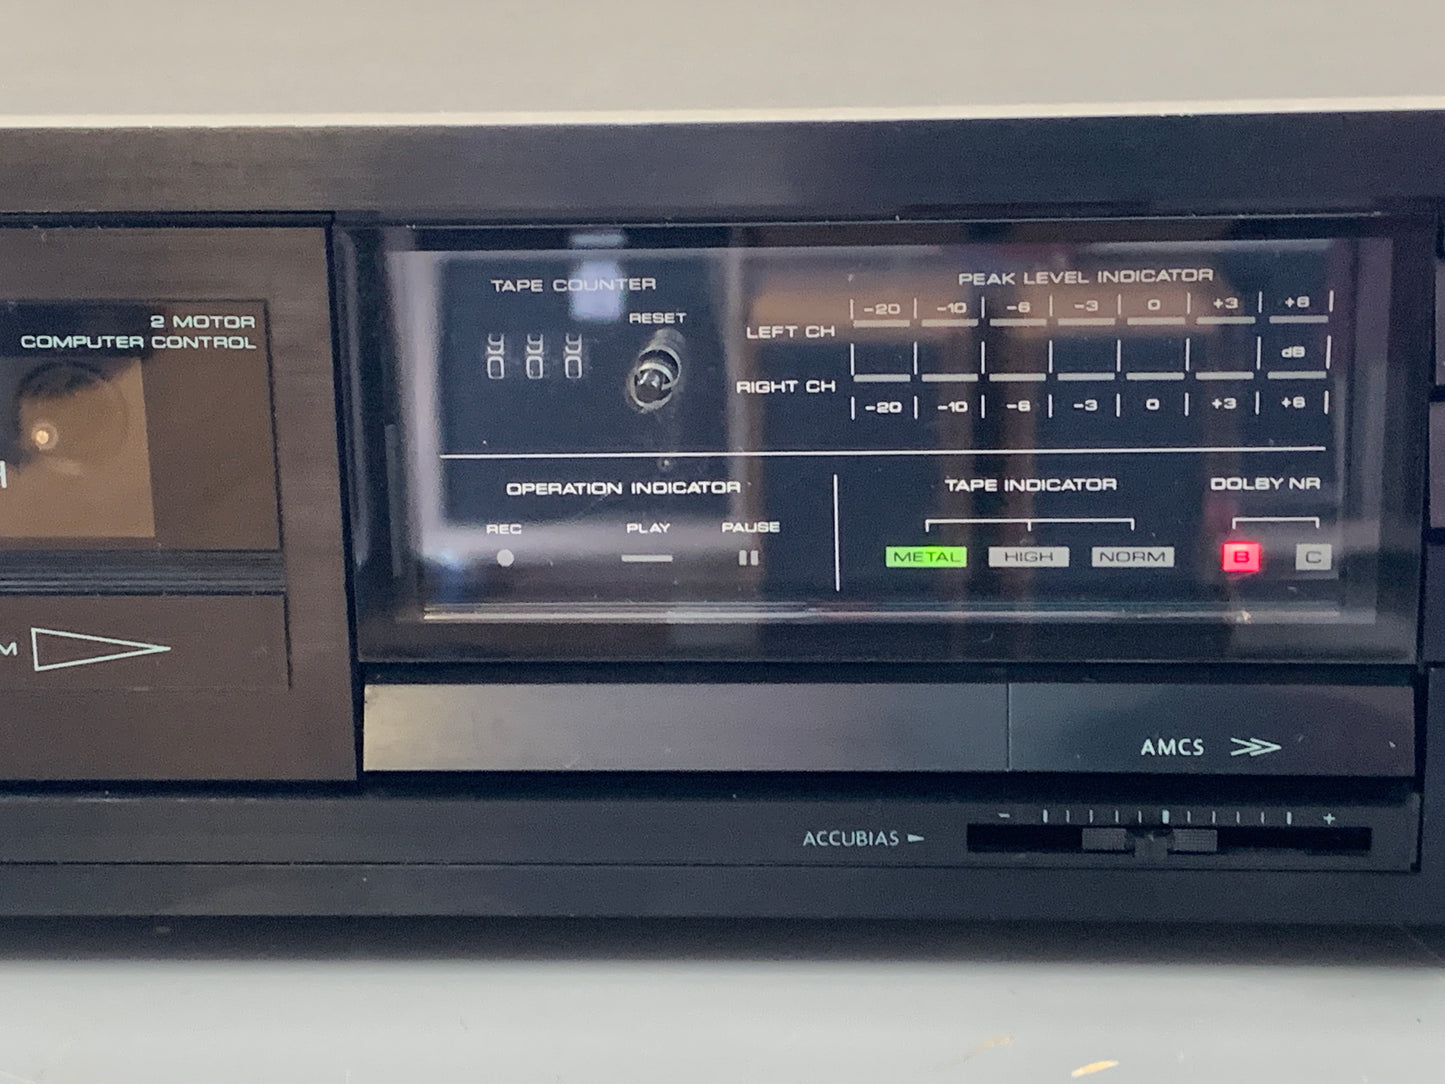 Onkyo TA-2130 Single Cassette Deck * 1987